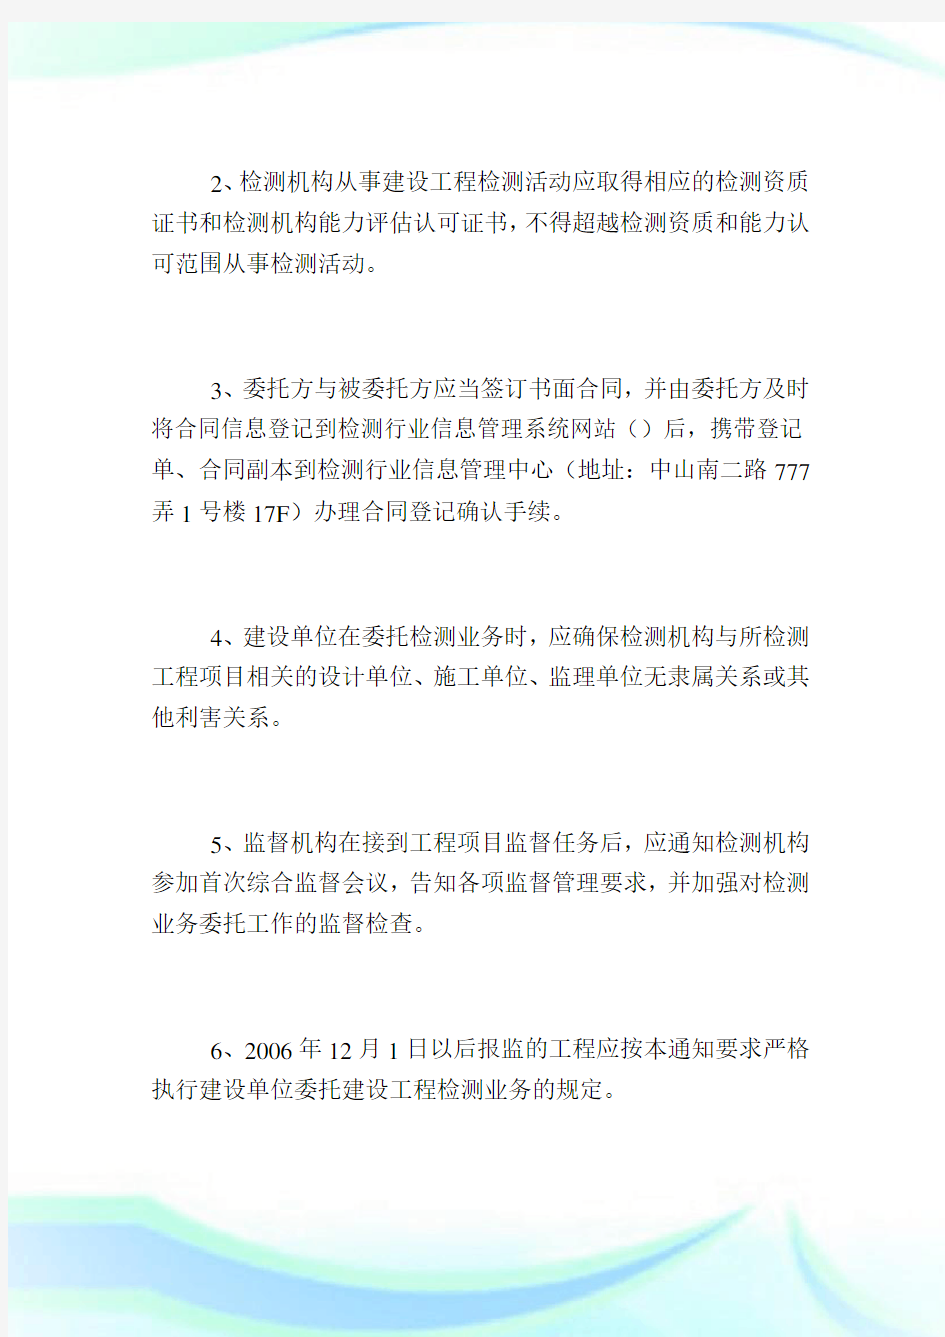 上海市建设工程安全质量监督总站落实建设单位委托建设工程检测业务.doc